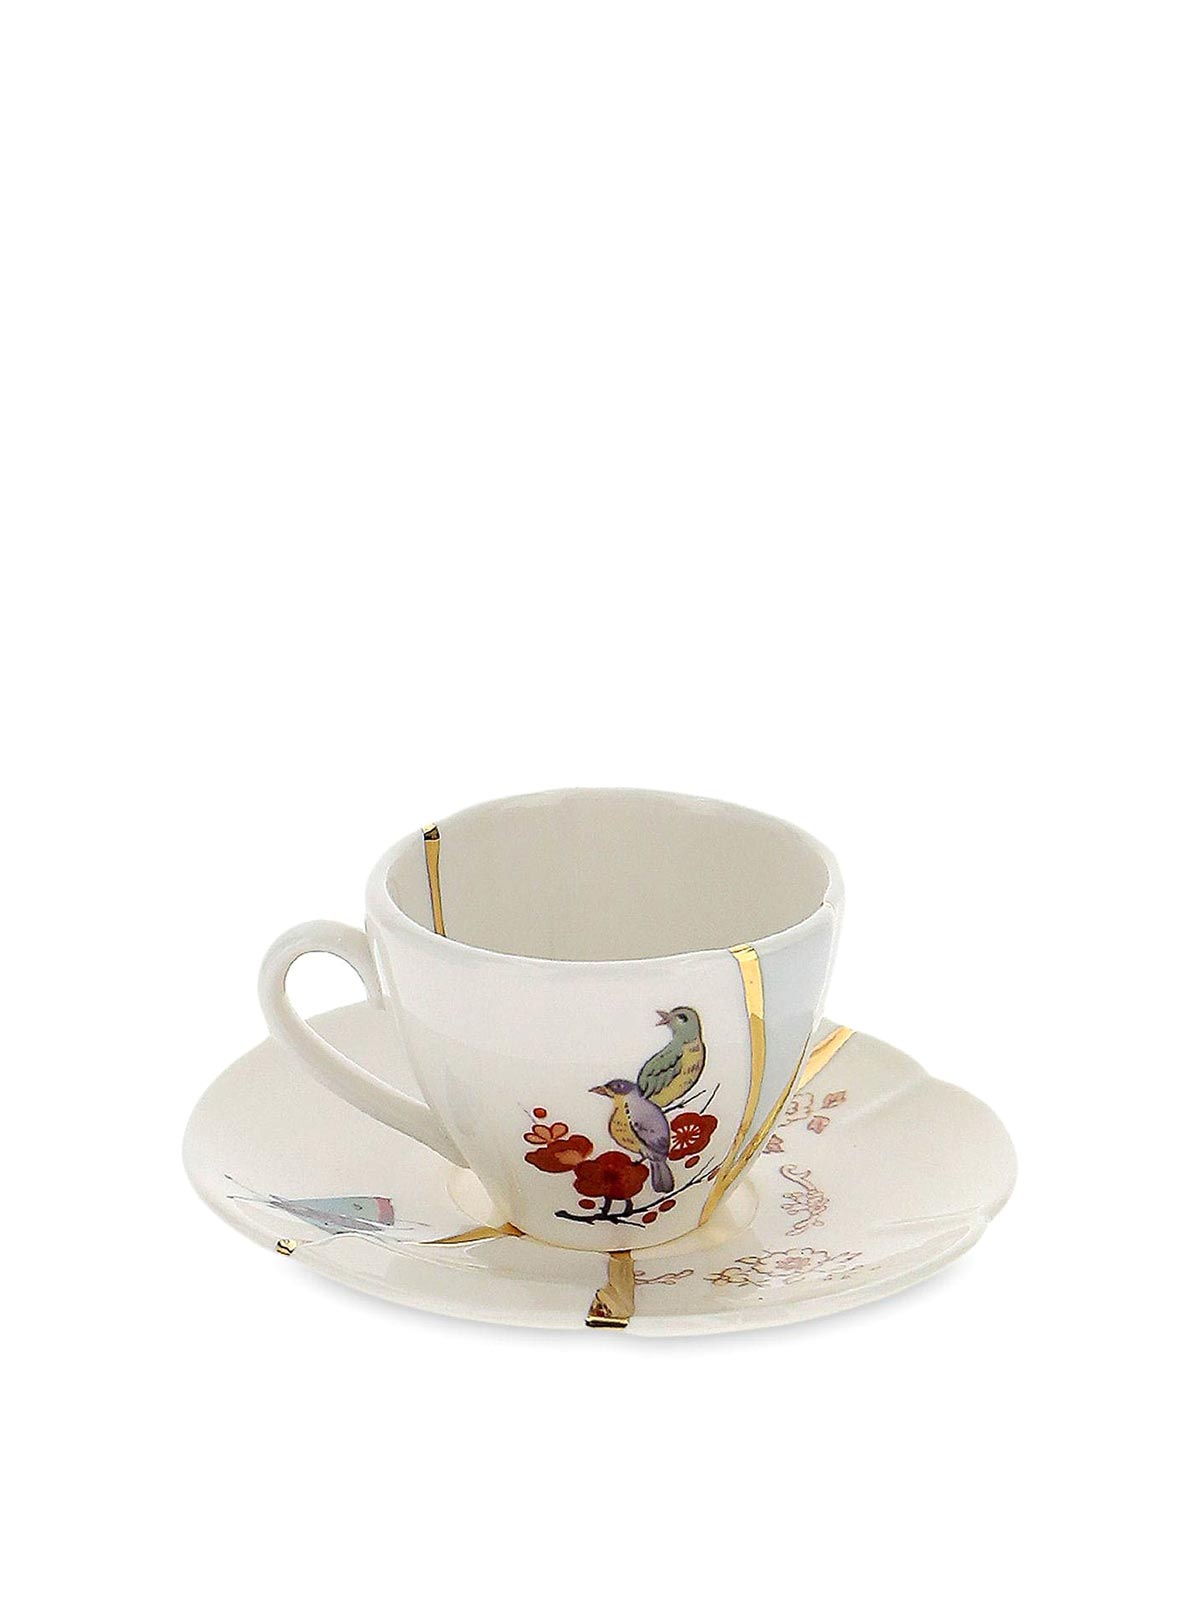 COFFEE CUP WITH SAUCER SELETTI KINTSUGI N 2 ART 09642 — LADUEMILA